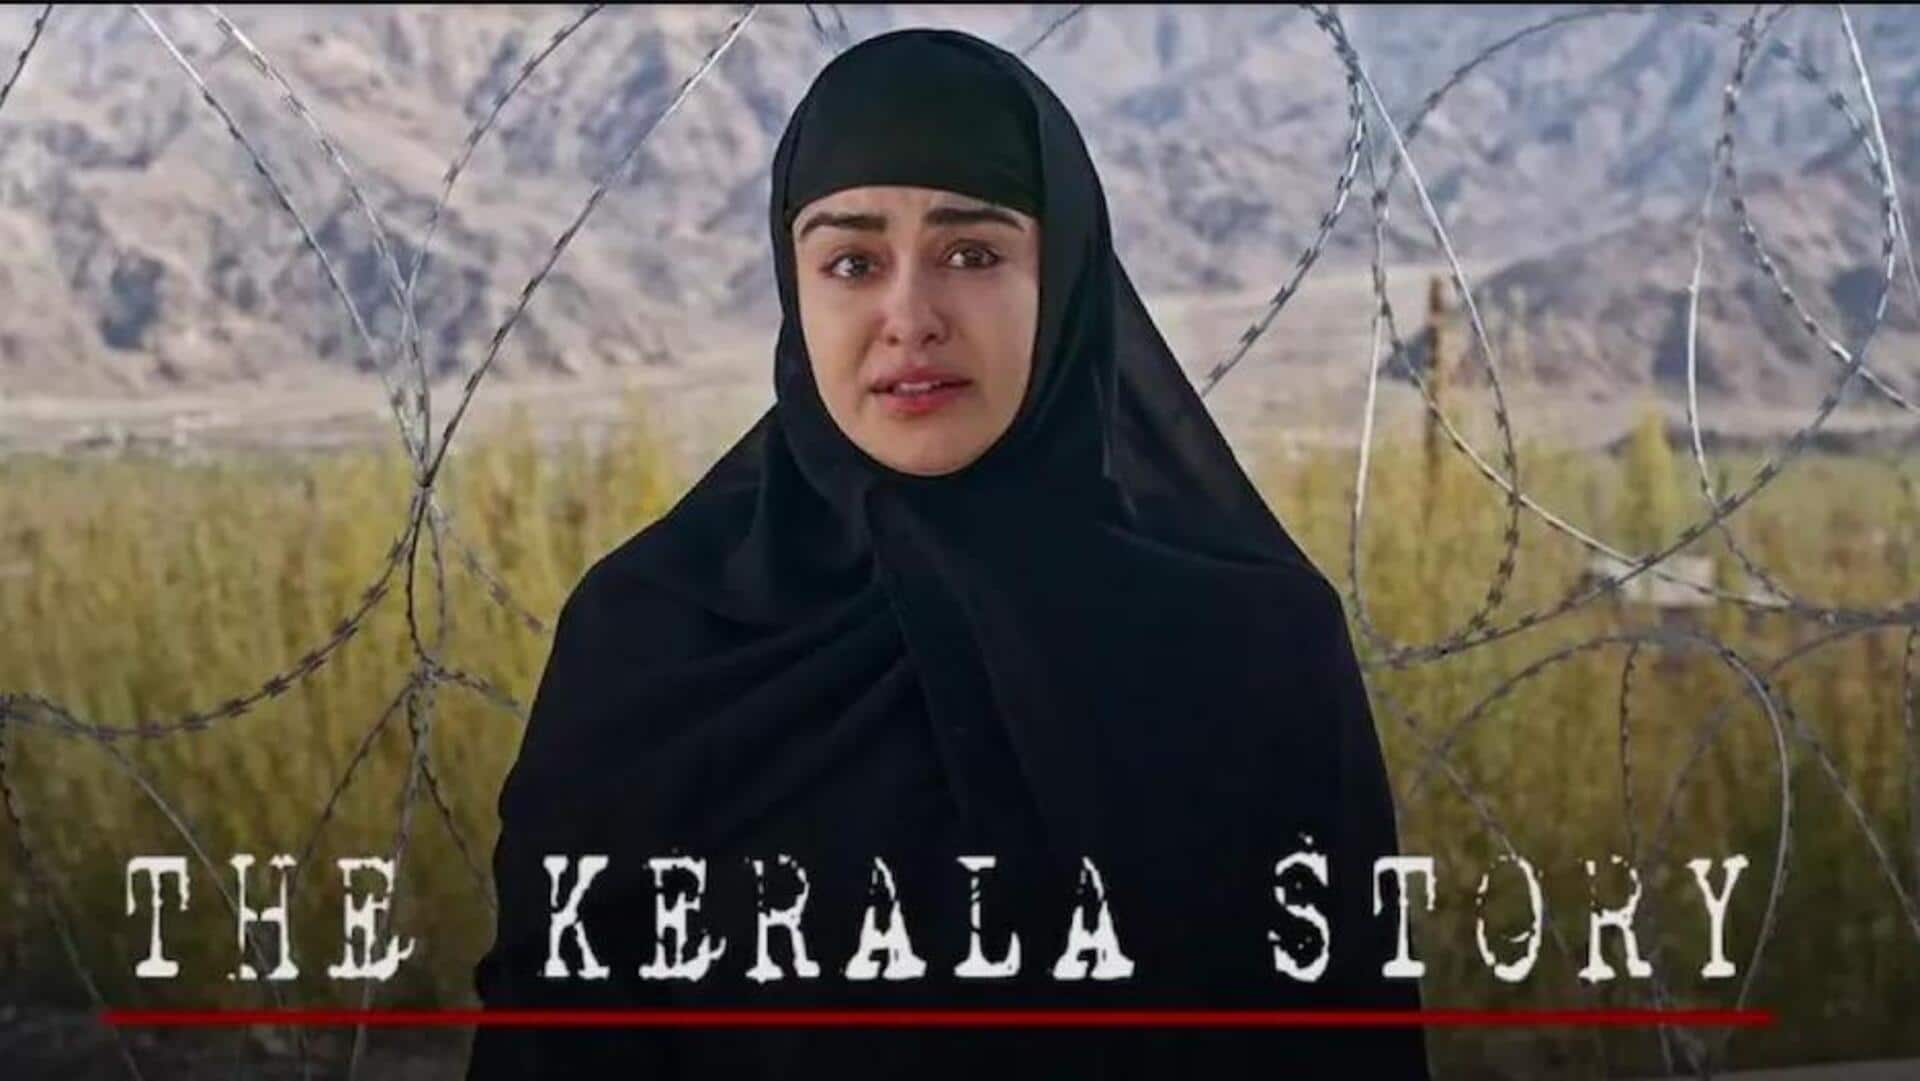 बॉक्स ऑफिस: अदा शर्मा की फिल्म 'द केरल स्टोरी' की कमाई 250 करोड़ रुपये की ओर 